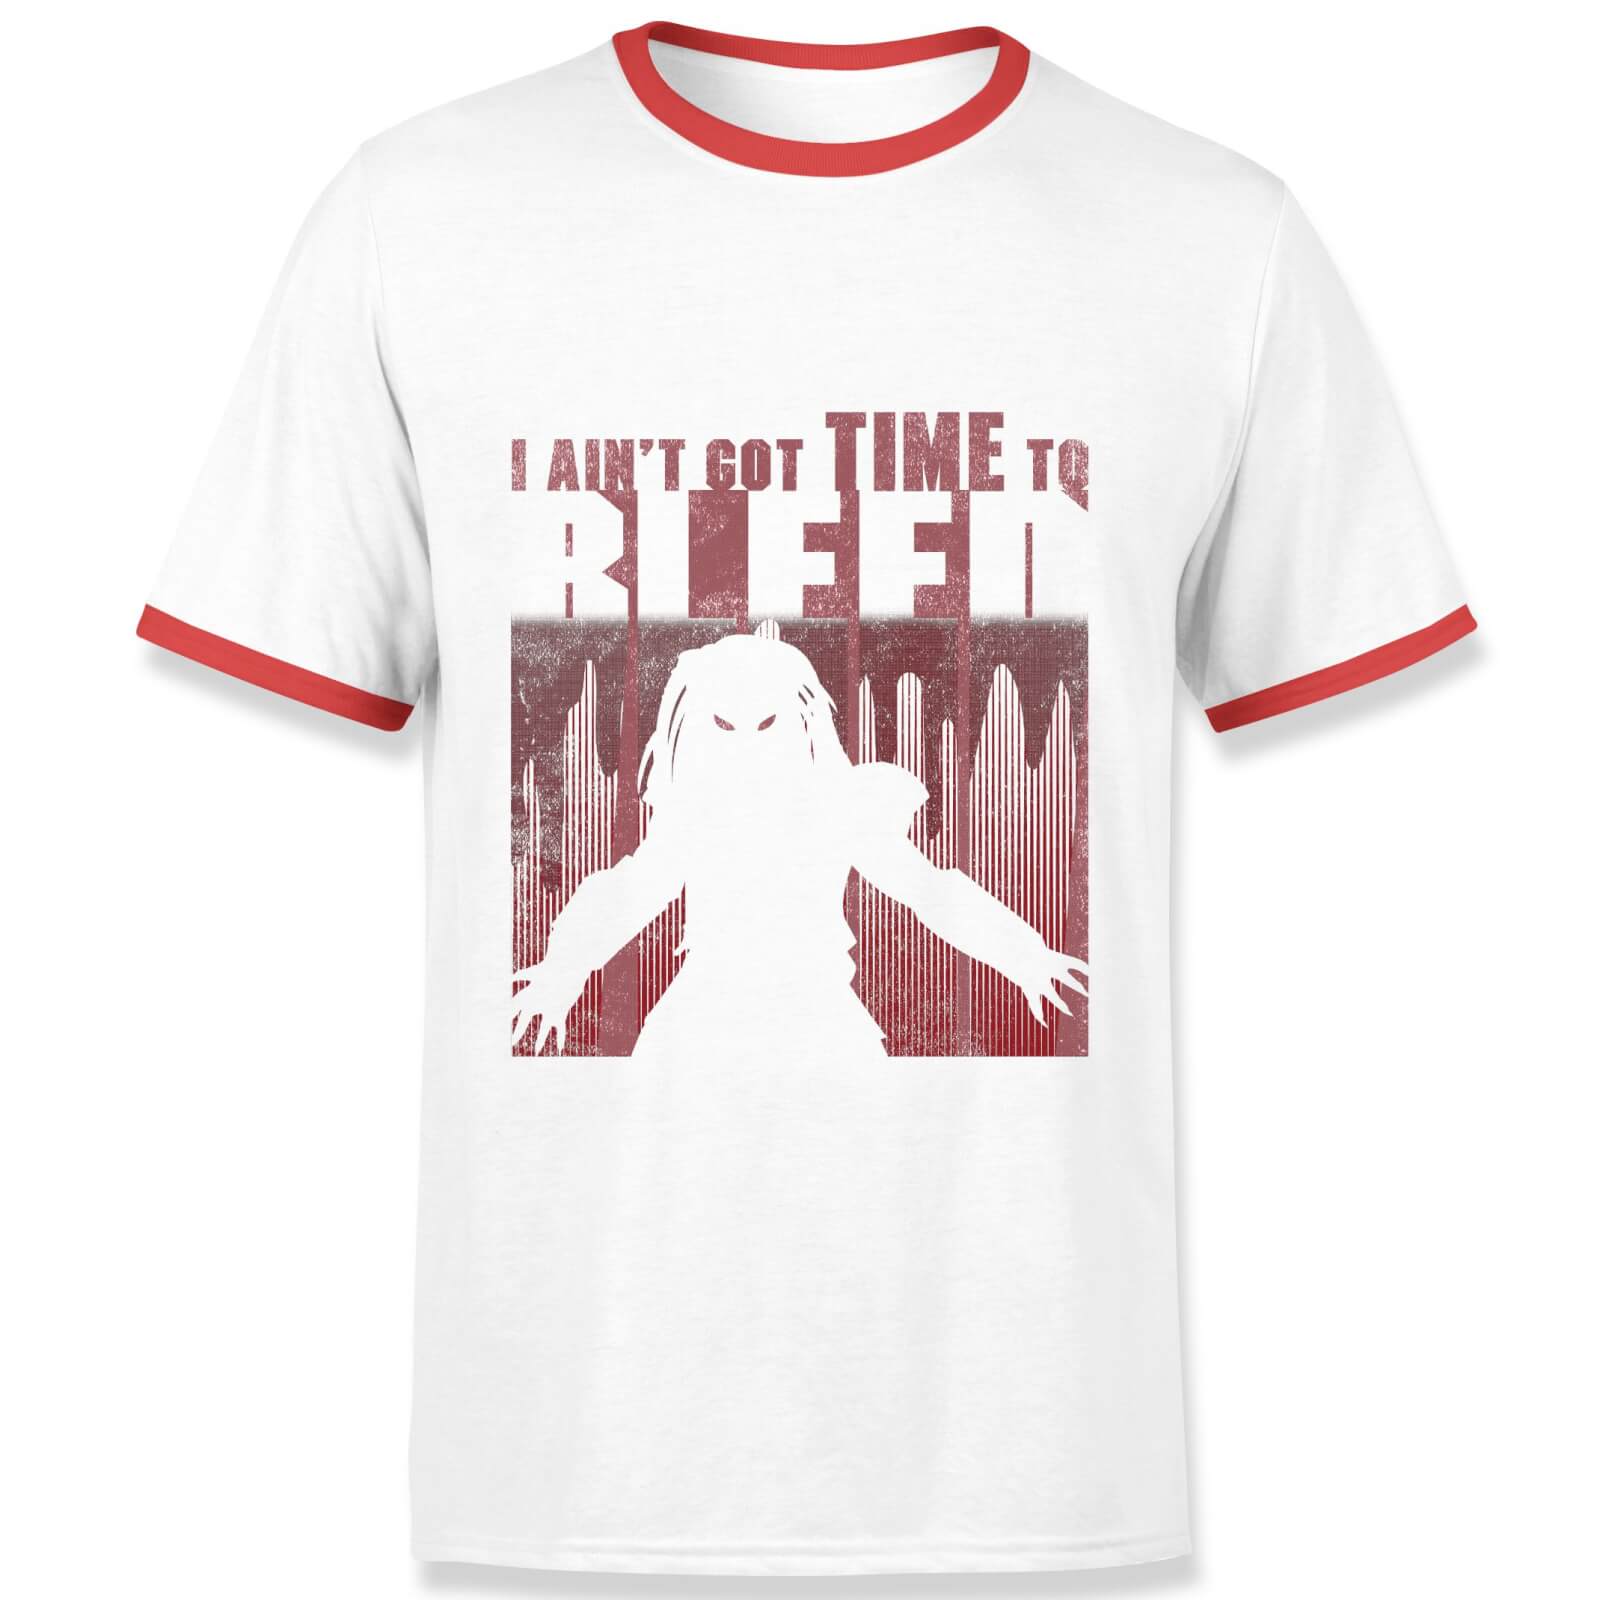 Predator Time To Bleed Men's Ringer T-Shirt - White/Red - XL - White Red